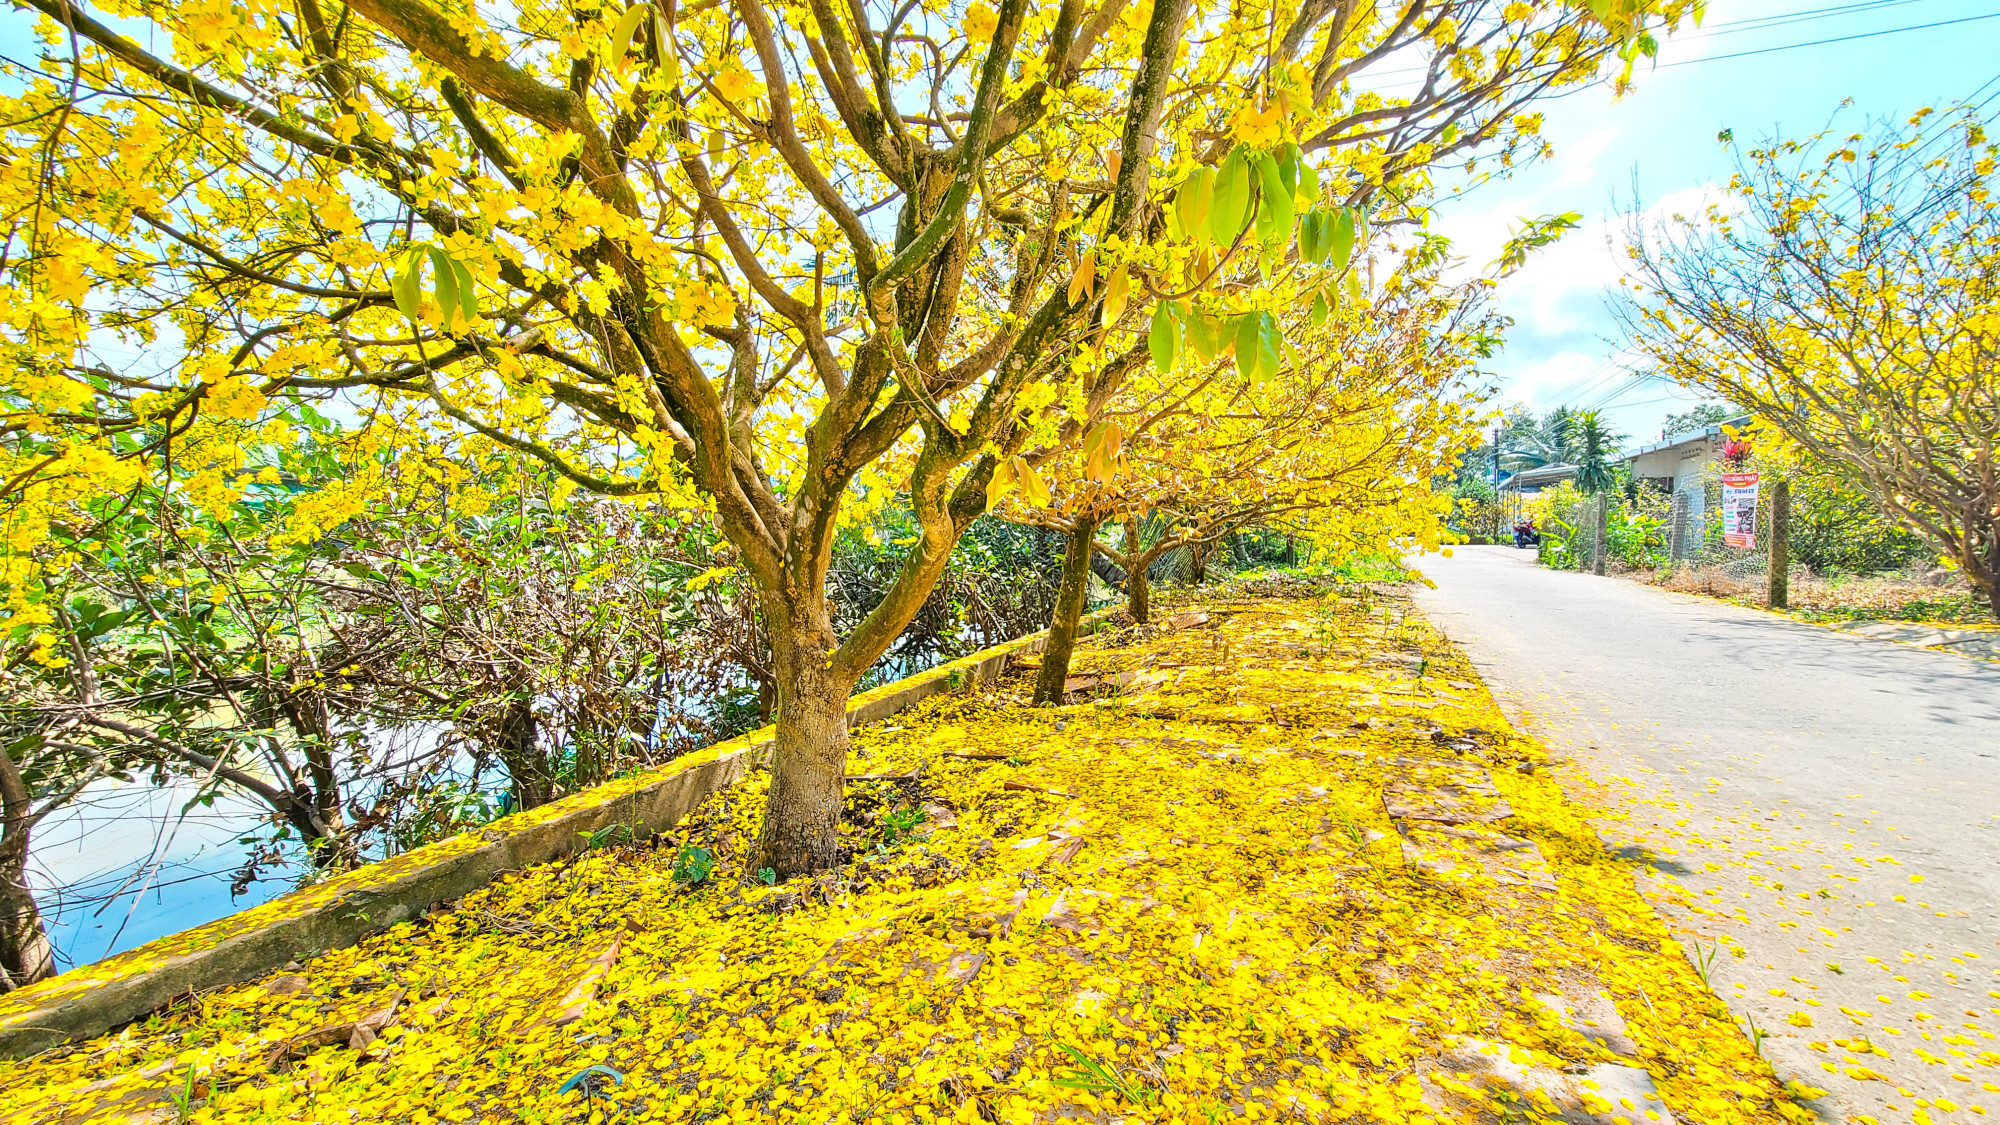 Hoa rụng như 'nhuộm' vàng cho đất. Anh Dương chia sẻ: 'Khi đi qua những con đường này, cho mình cảm giác yêu quê hương hơn, và có nhiều cảm hứng cho năm mới bởi sắc hương của hoa mai mang lại'.